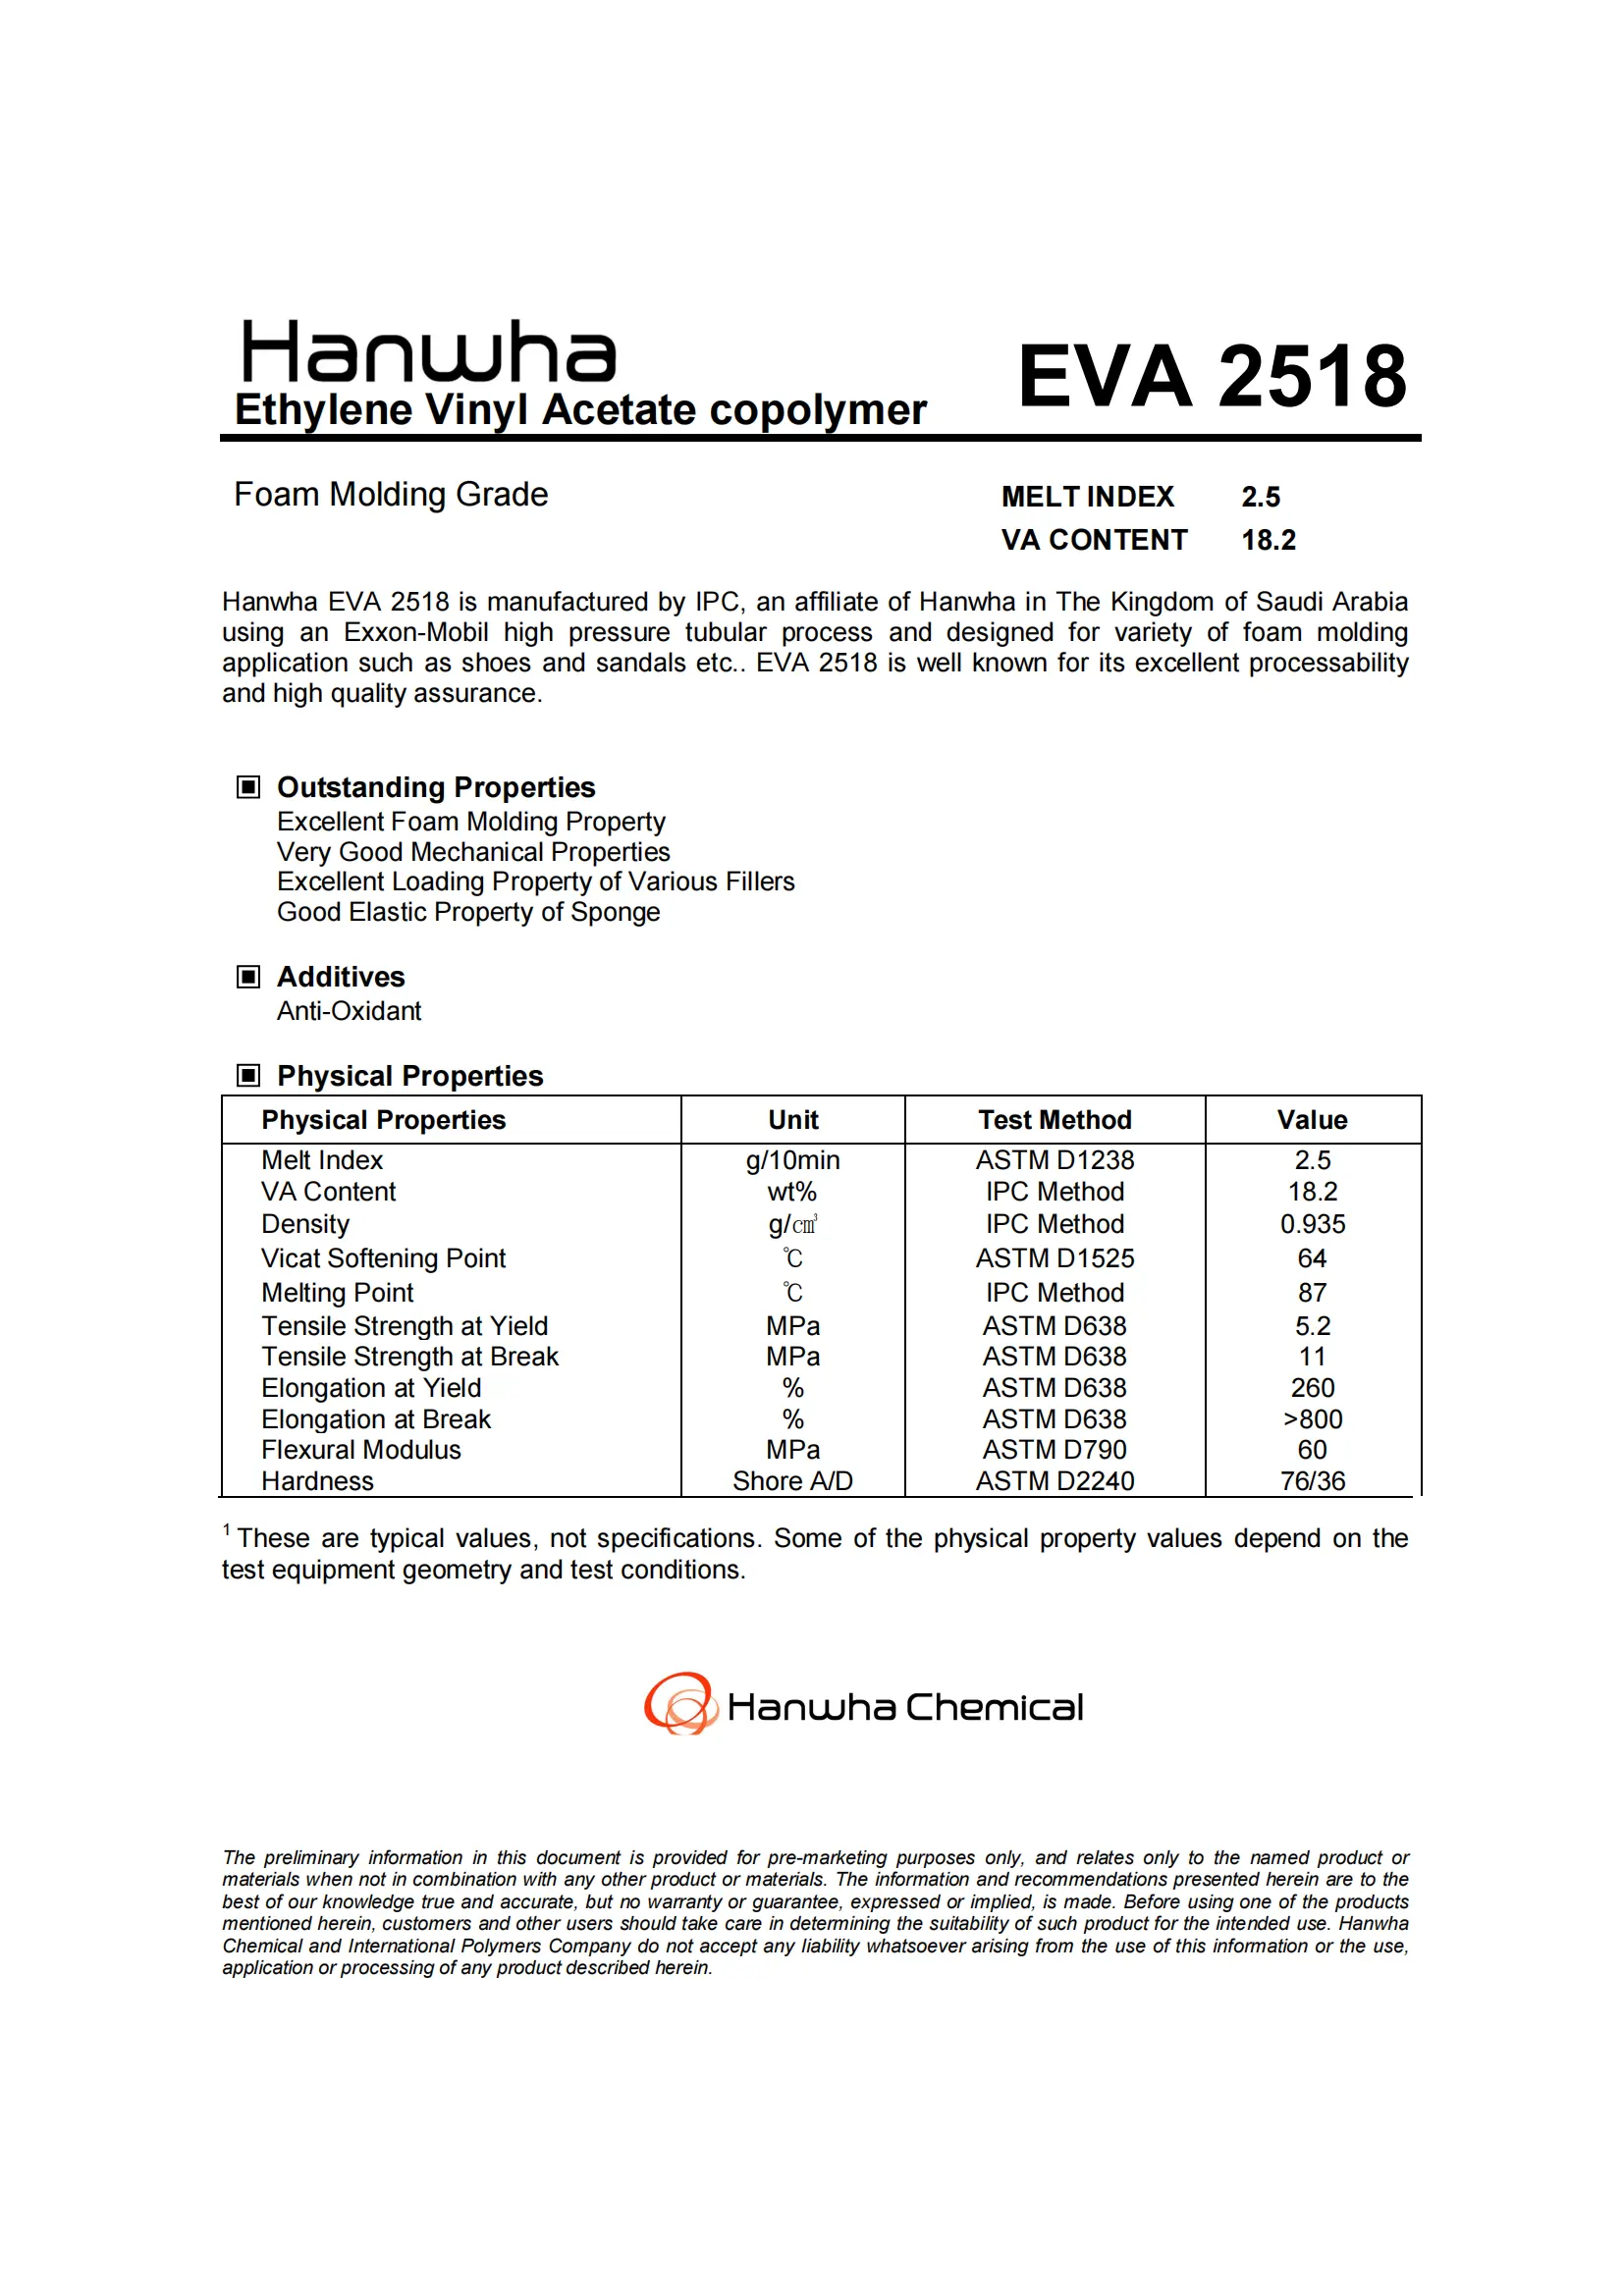 Moulage mousse grade EVA 2518 granules VA 18.2% pour chaussures et sandales